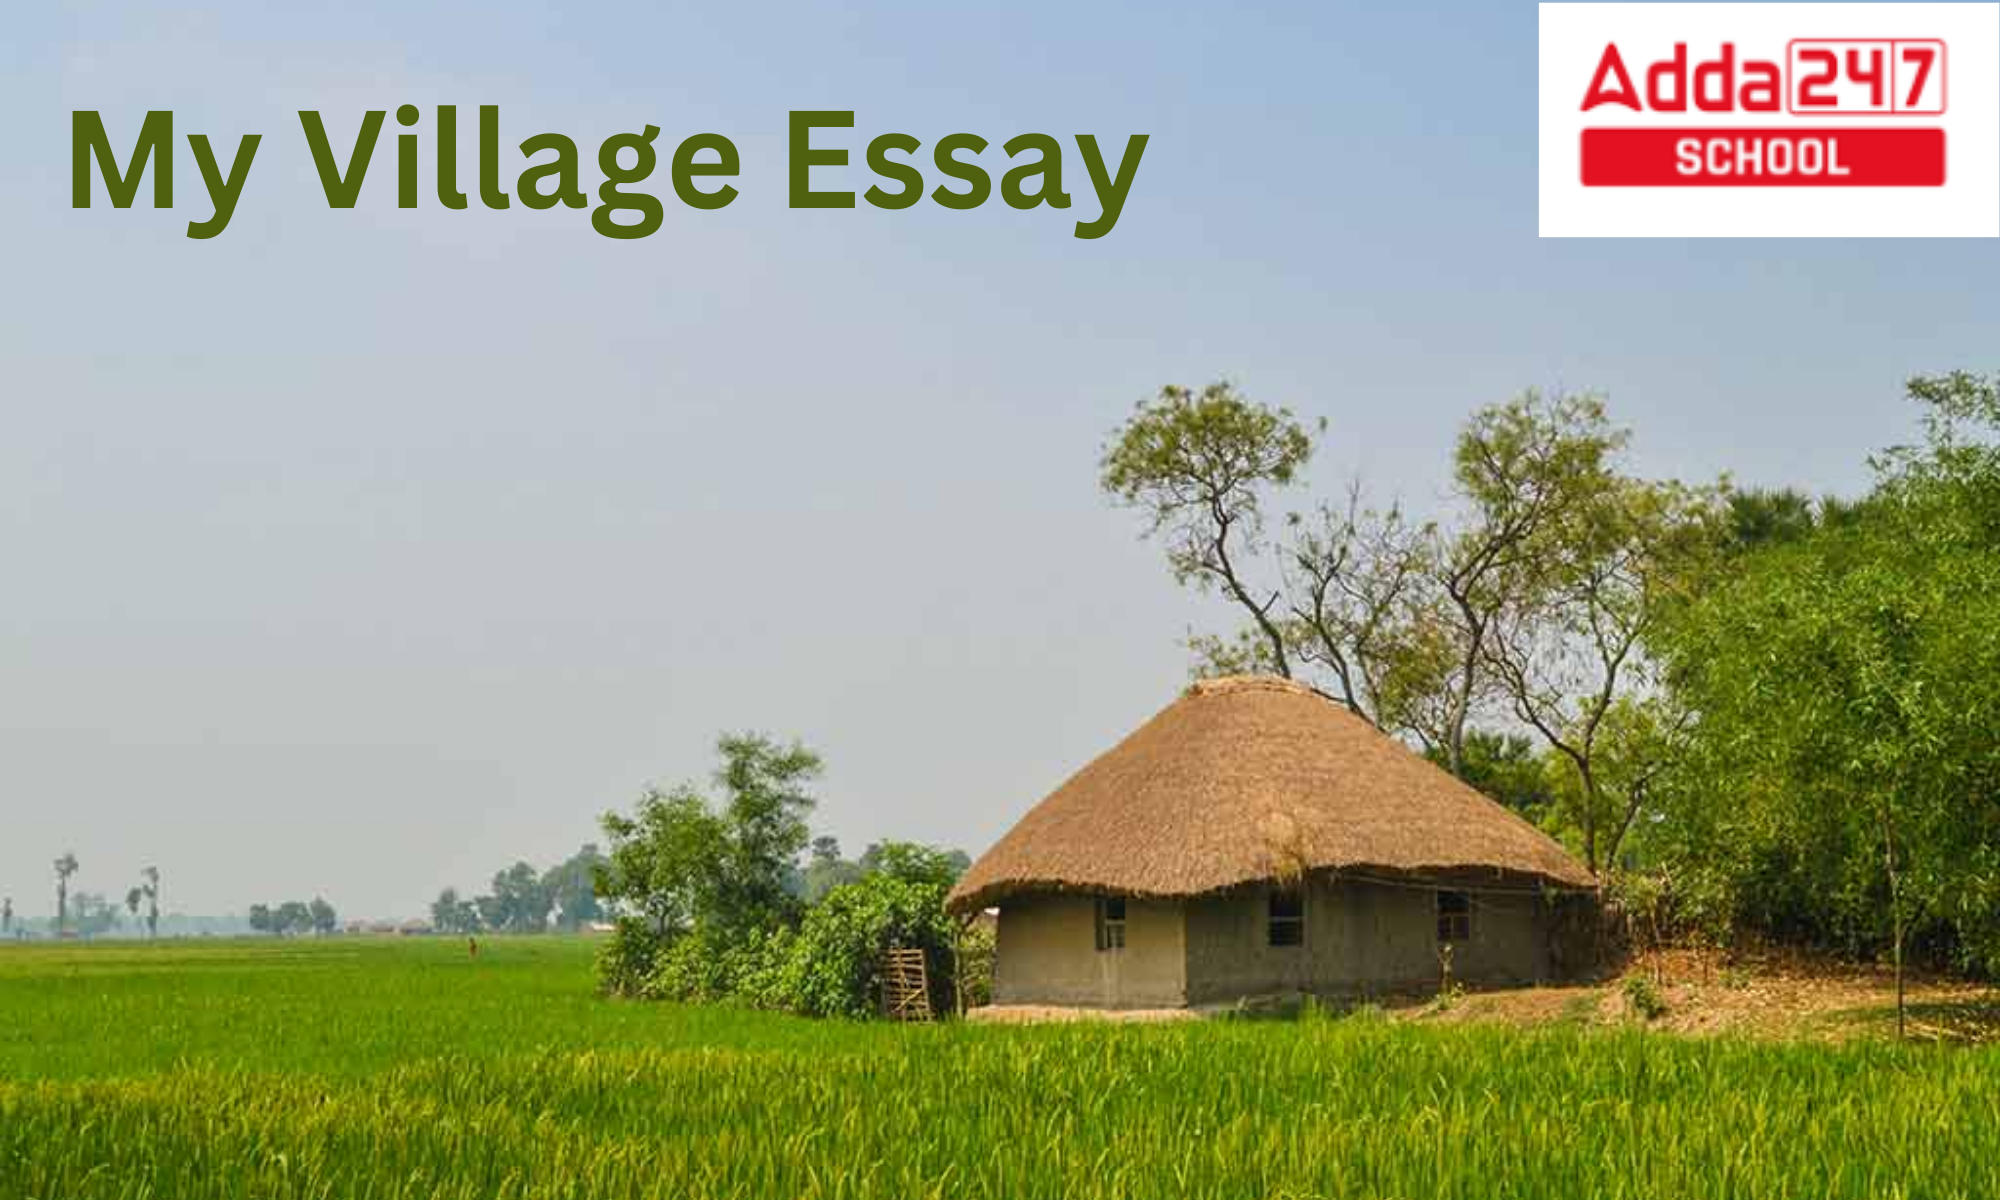 My Village Essay